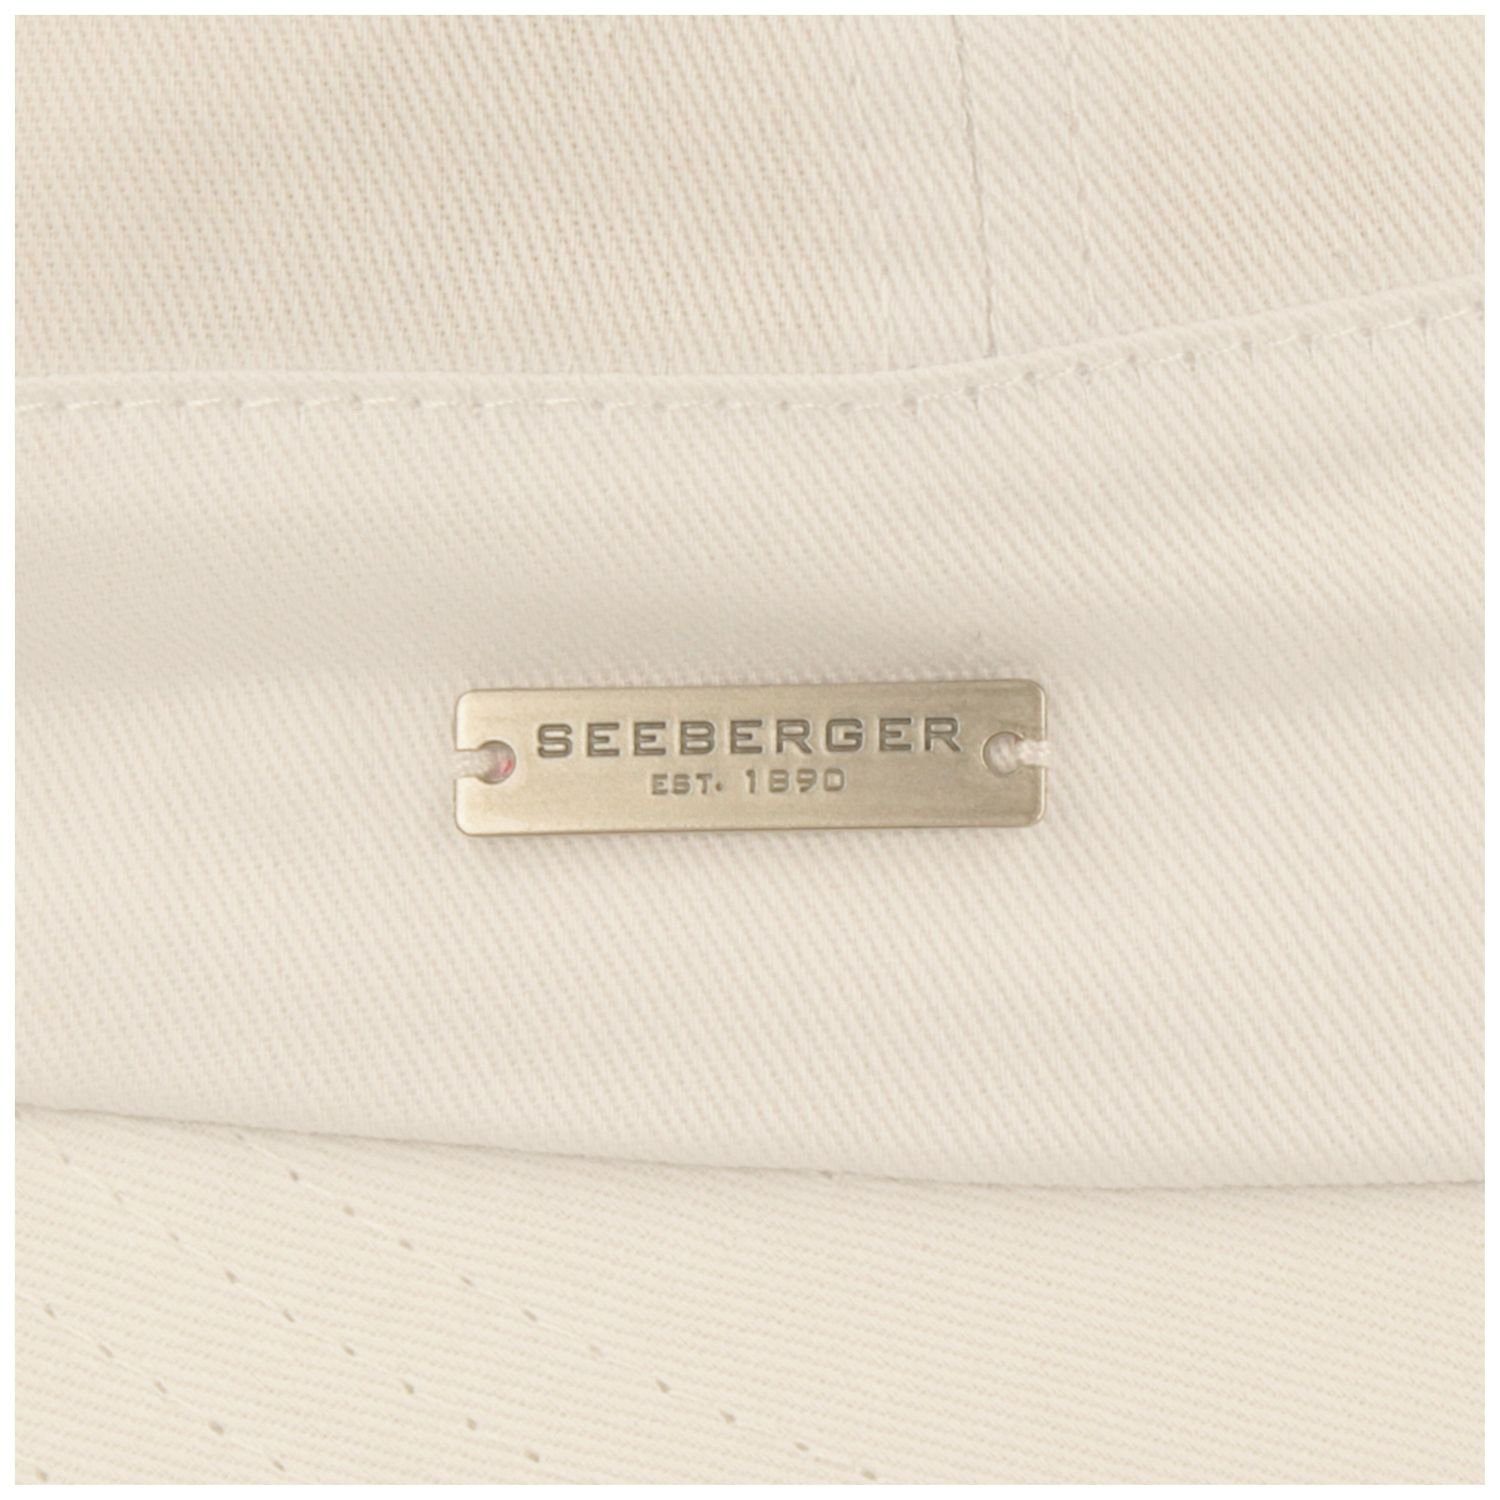 Seeberger Visor Schildkappe aus 100% Baumwolle mit Schleife 17-weiss hinten